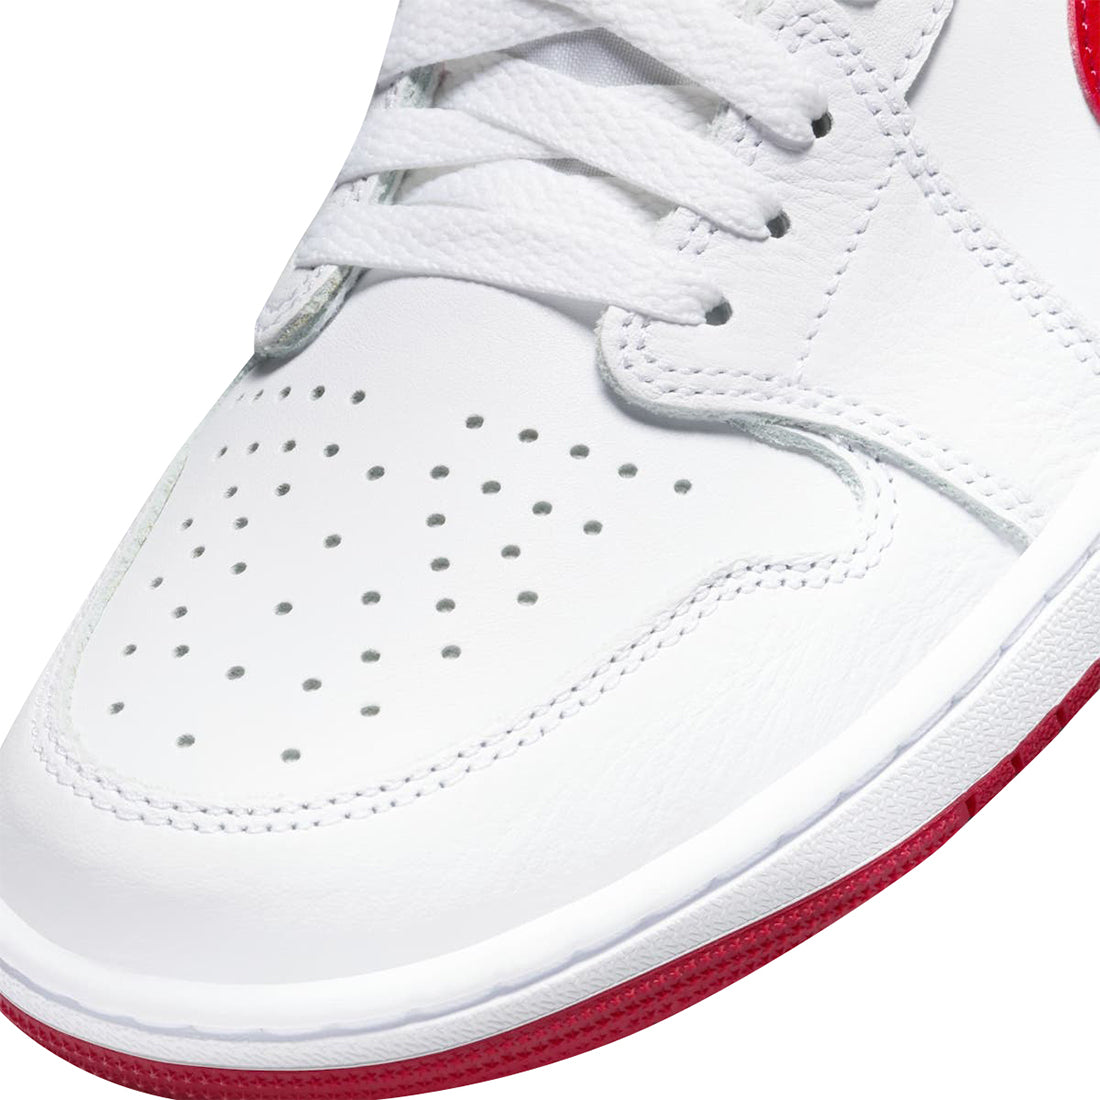 Air Jordan 1 Retro Low Og - White/Univ Red/White